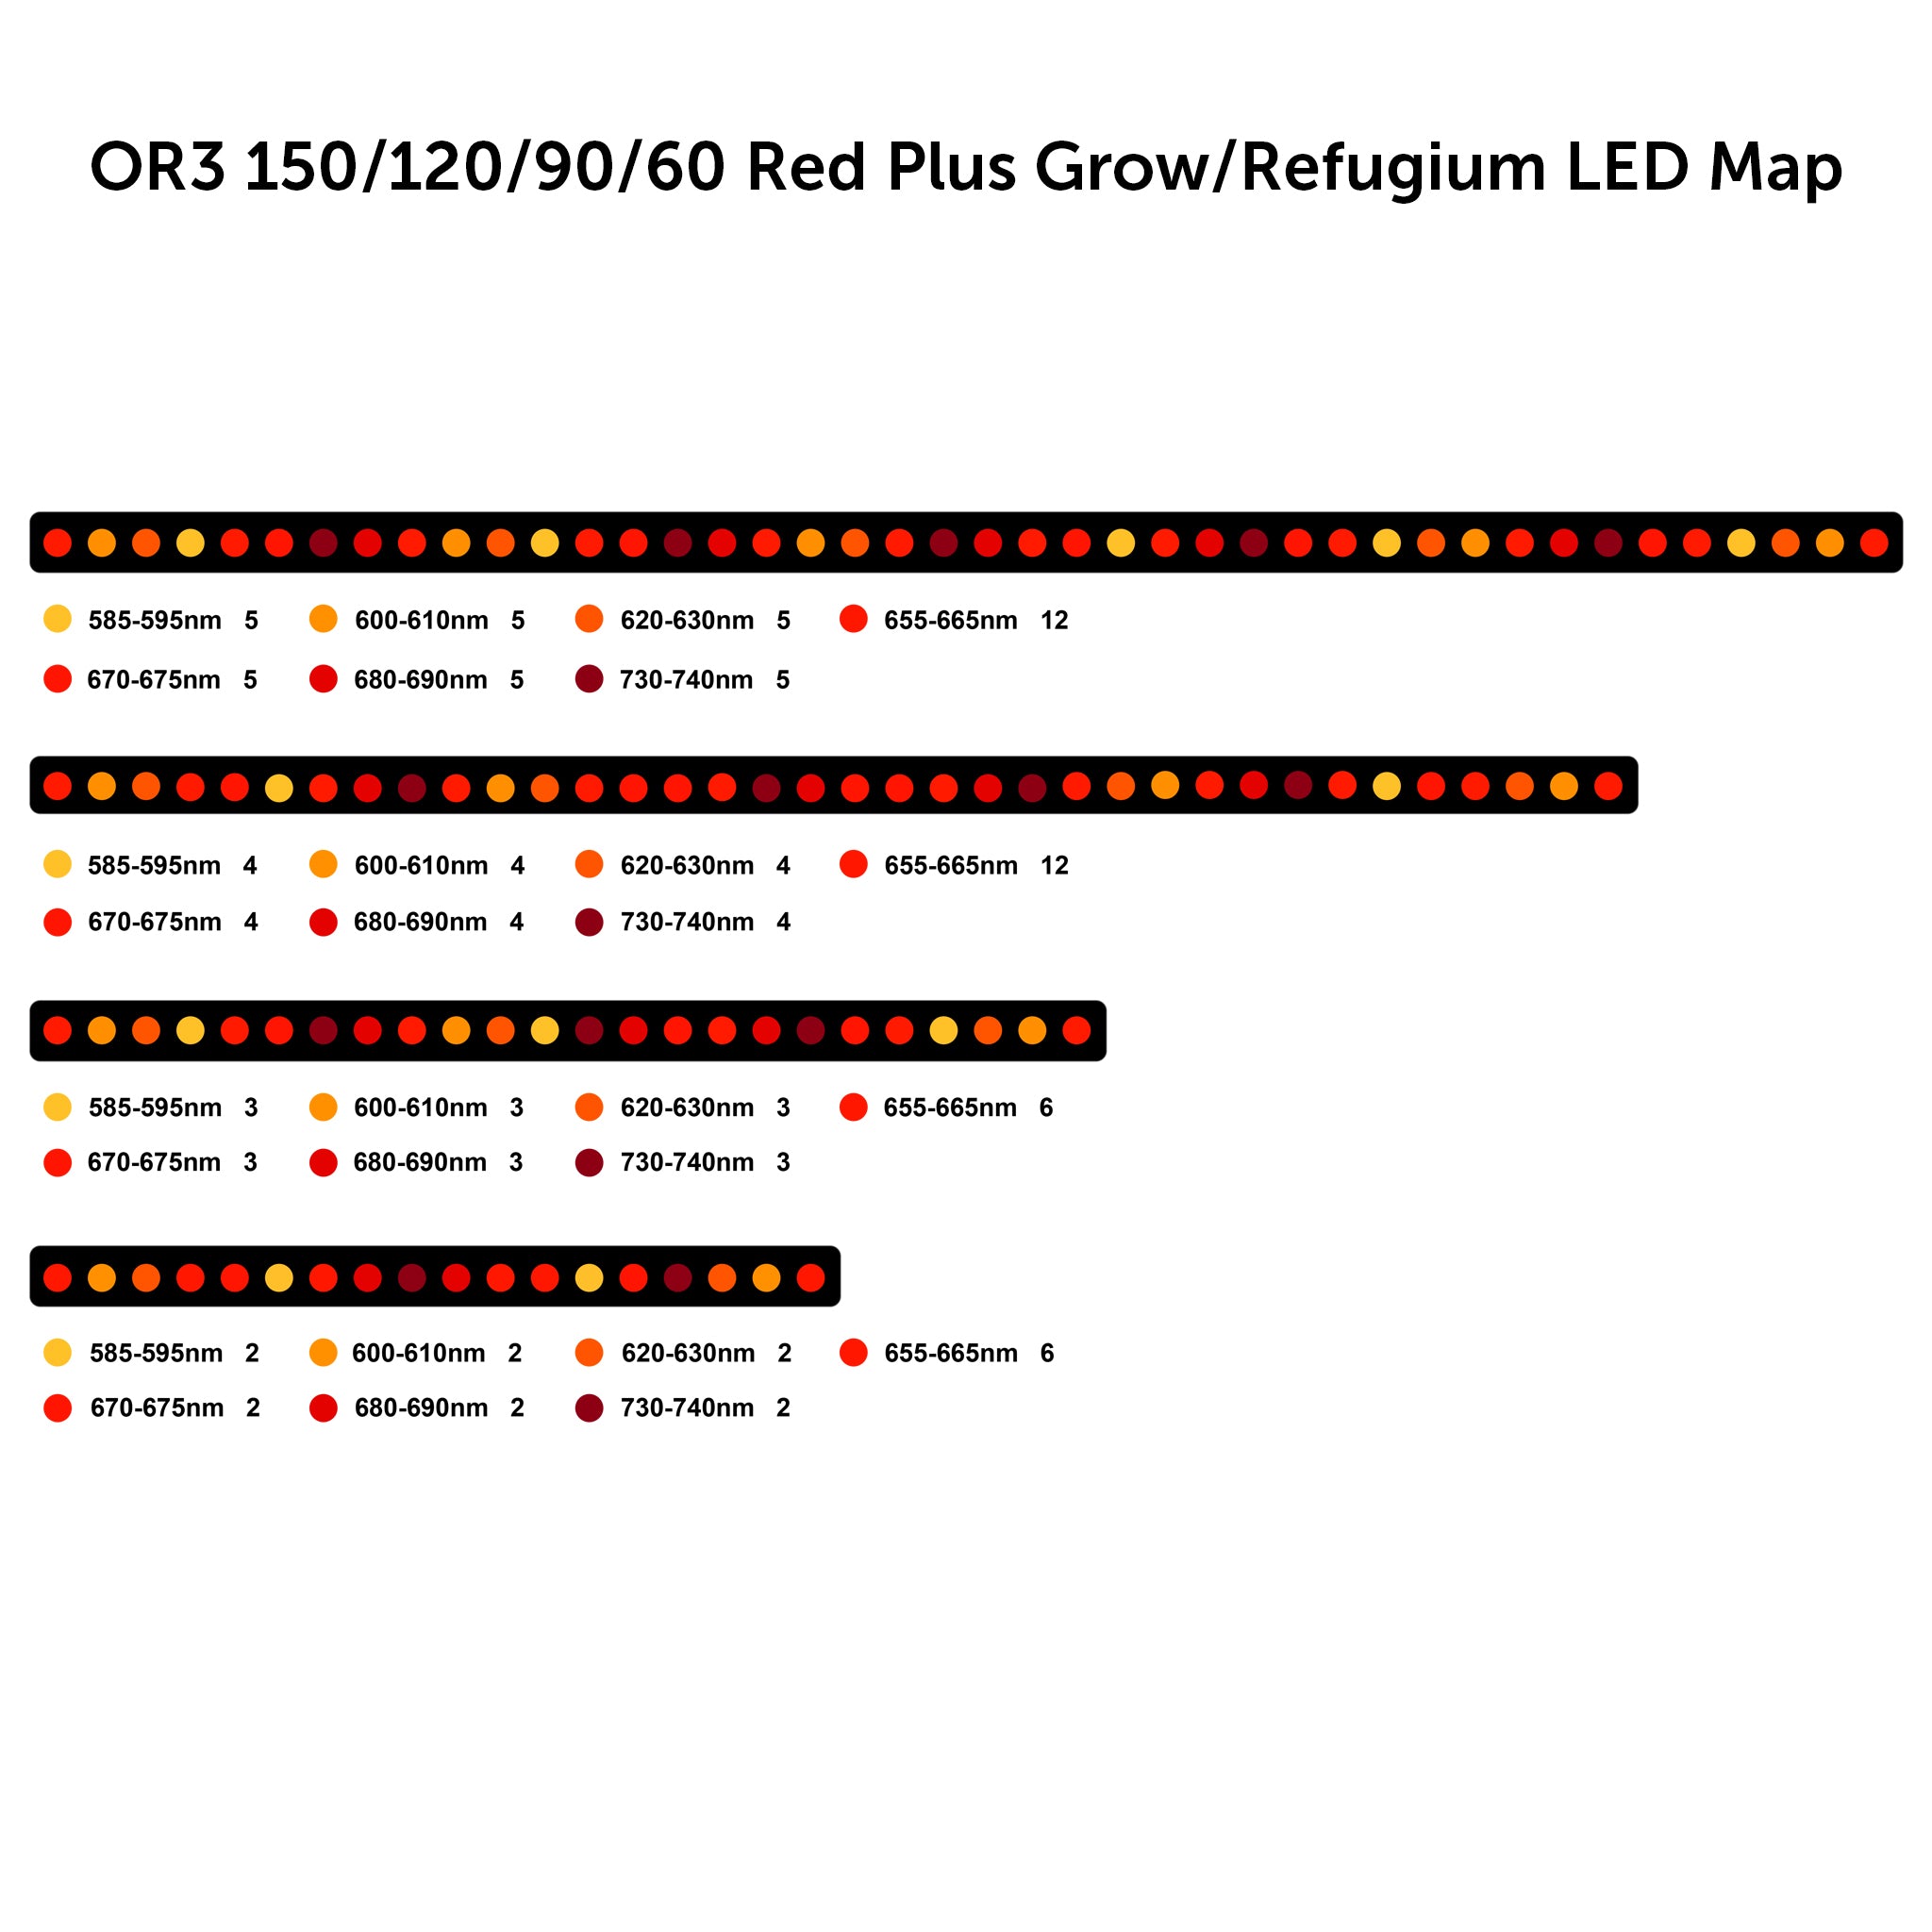 Barra de LED OR3 Red Plus - Grow / Refugium